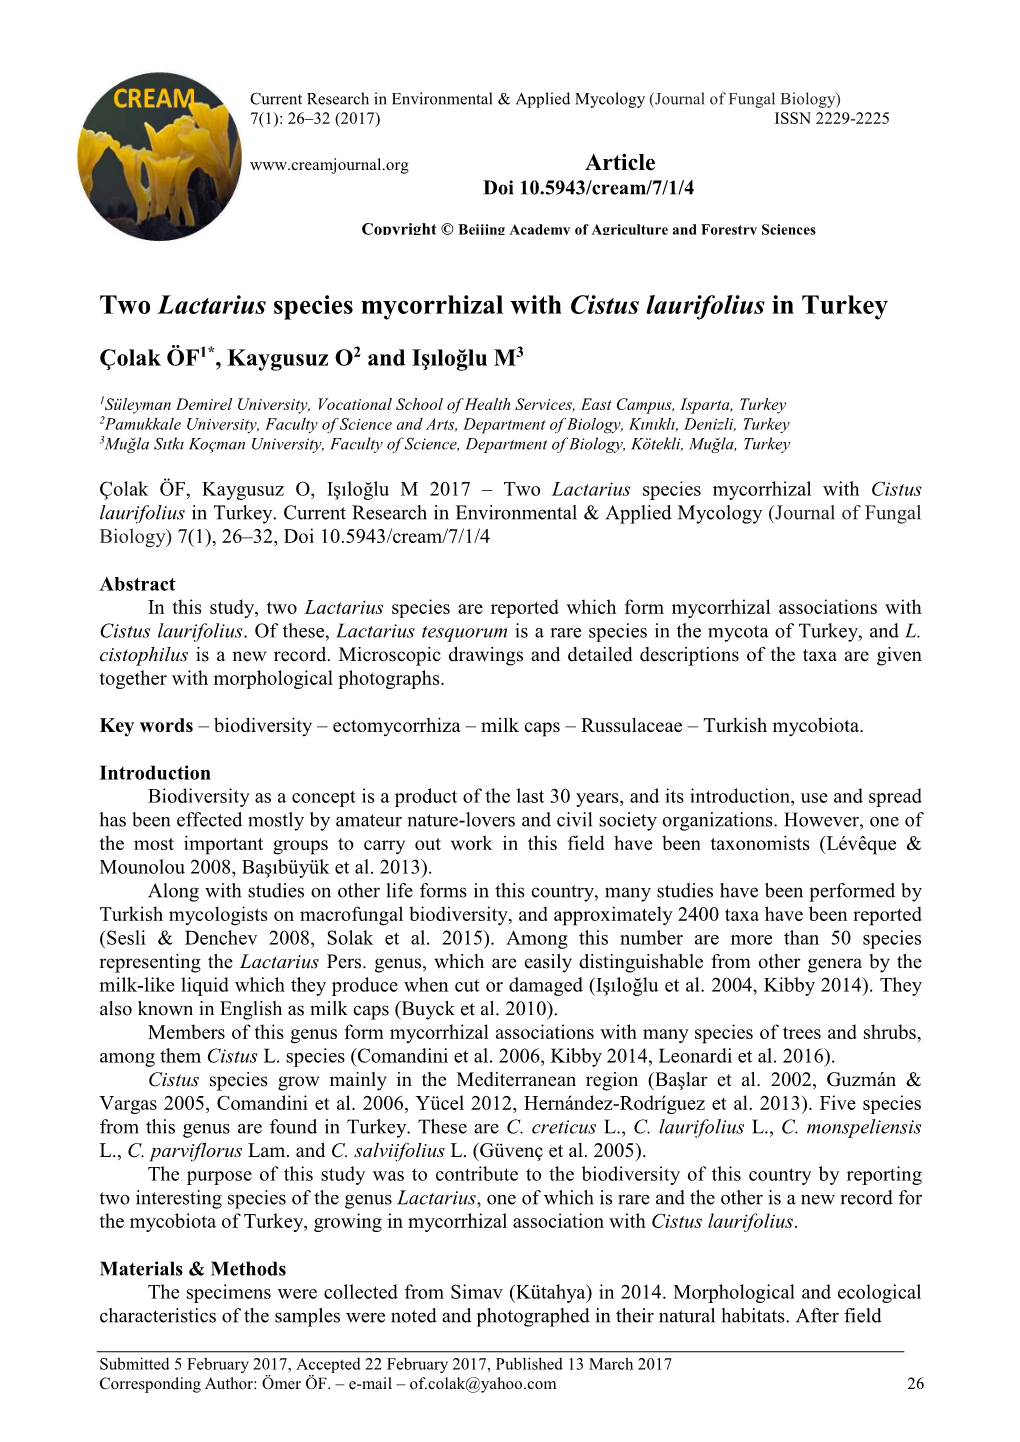 Two Lactarius Species Mycorrhizal with Cistus Laurifolius in Turkey